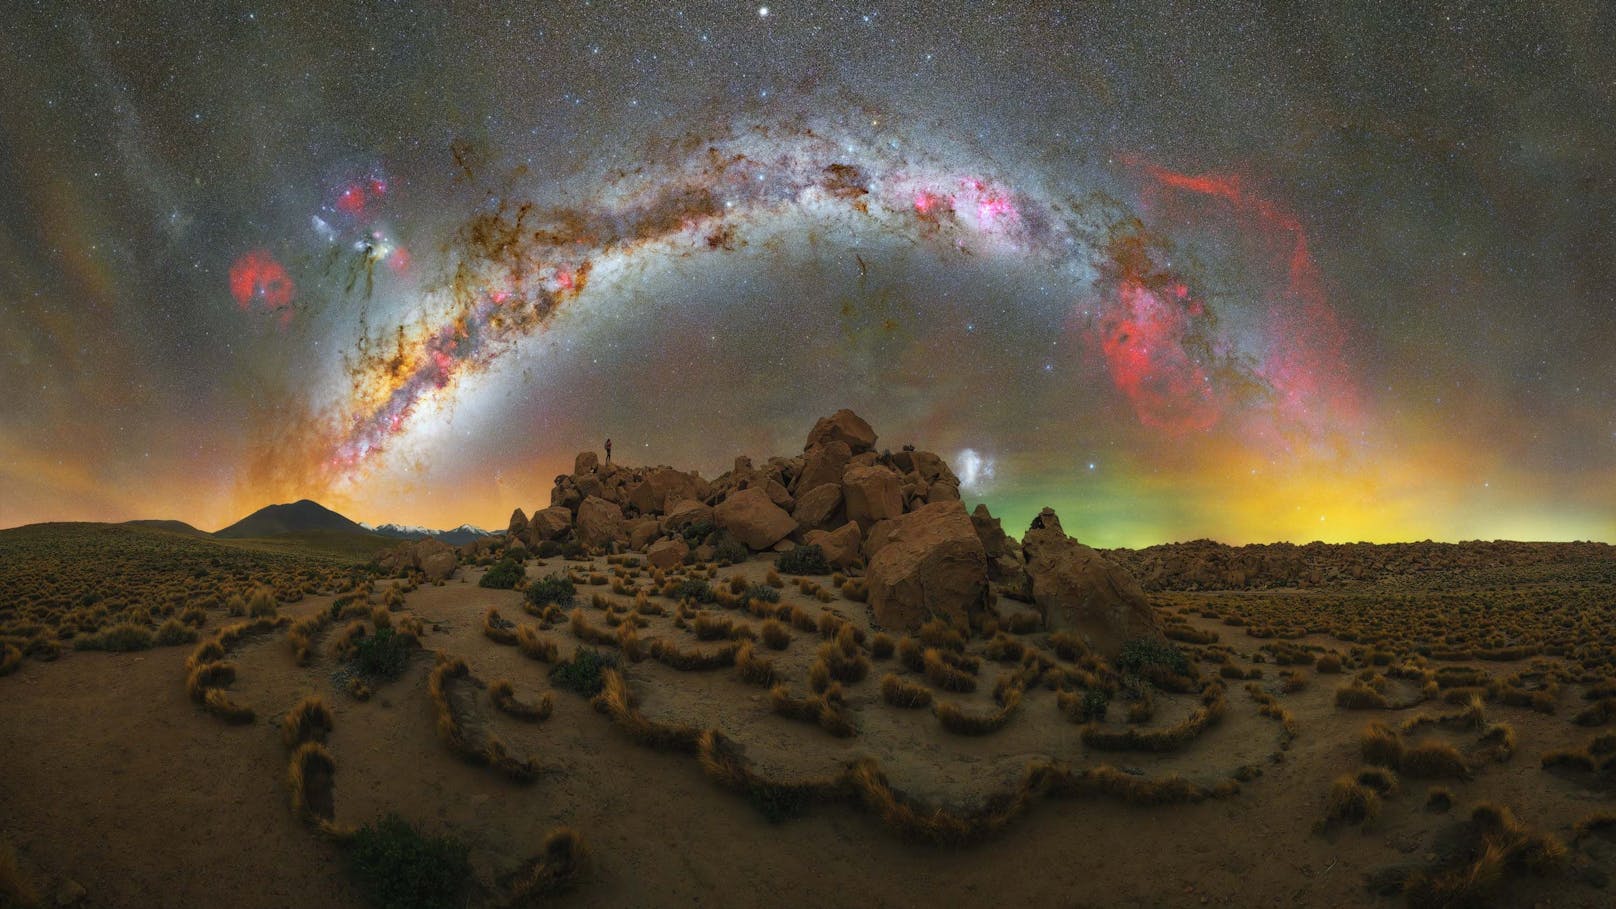 "The Lions Den" von Lorenzio Ranieri, aufgenommen in der Atacama-Wüste in Chile